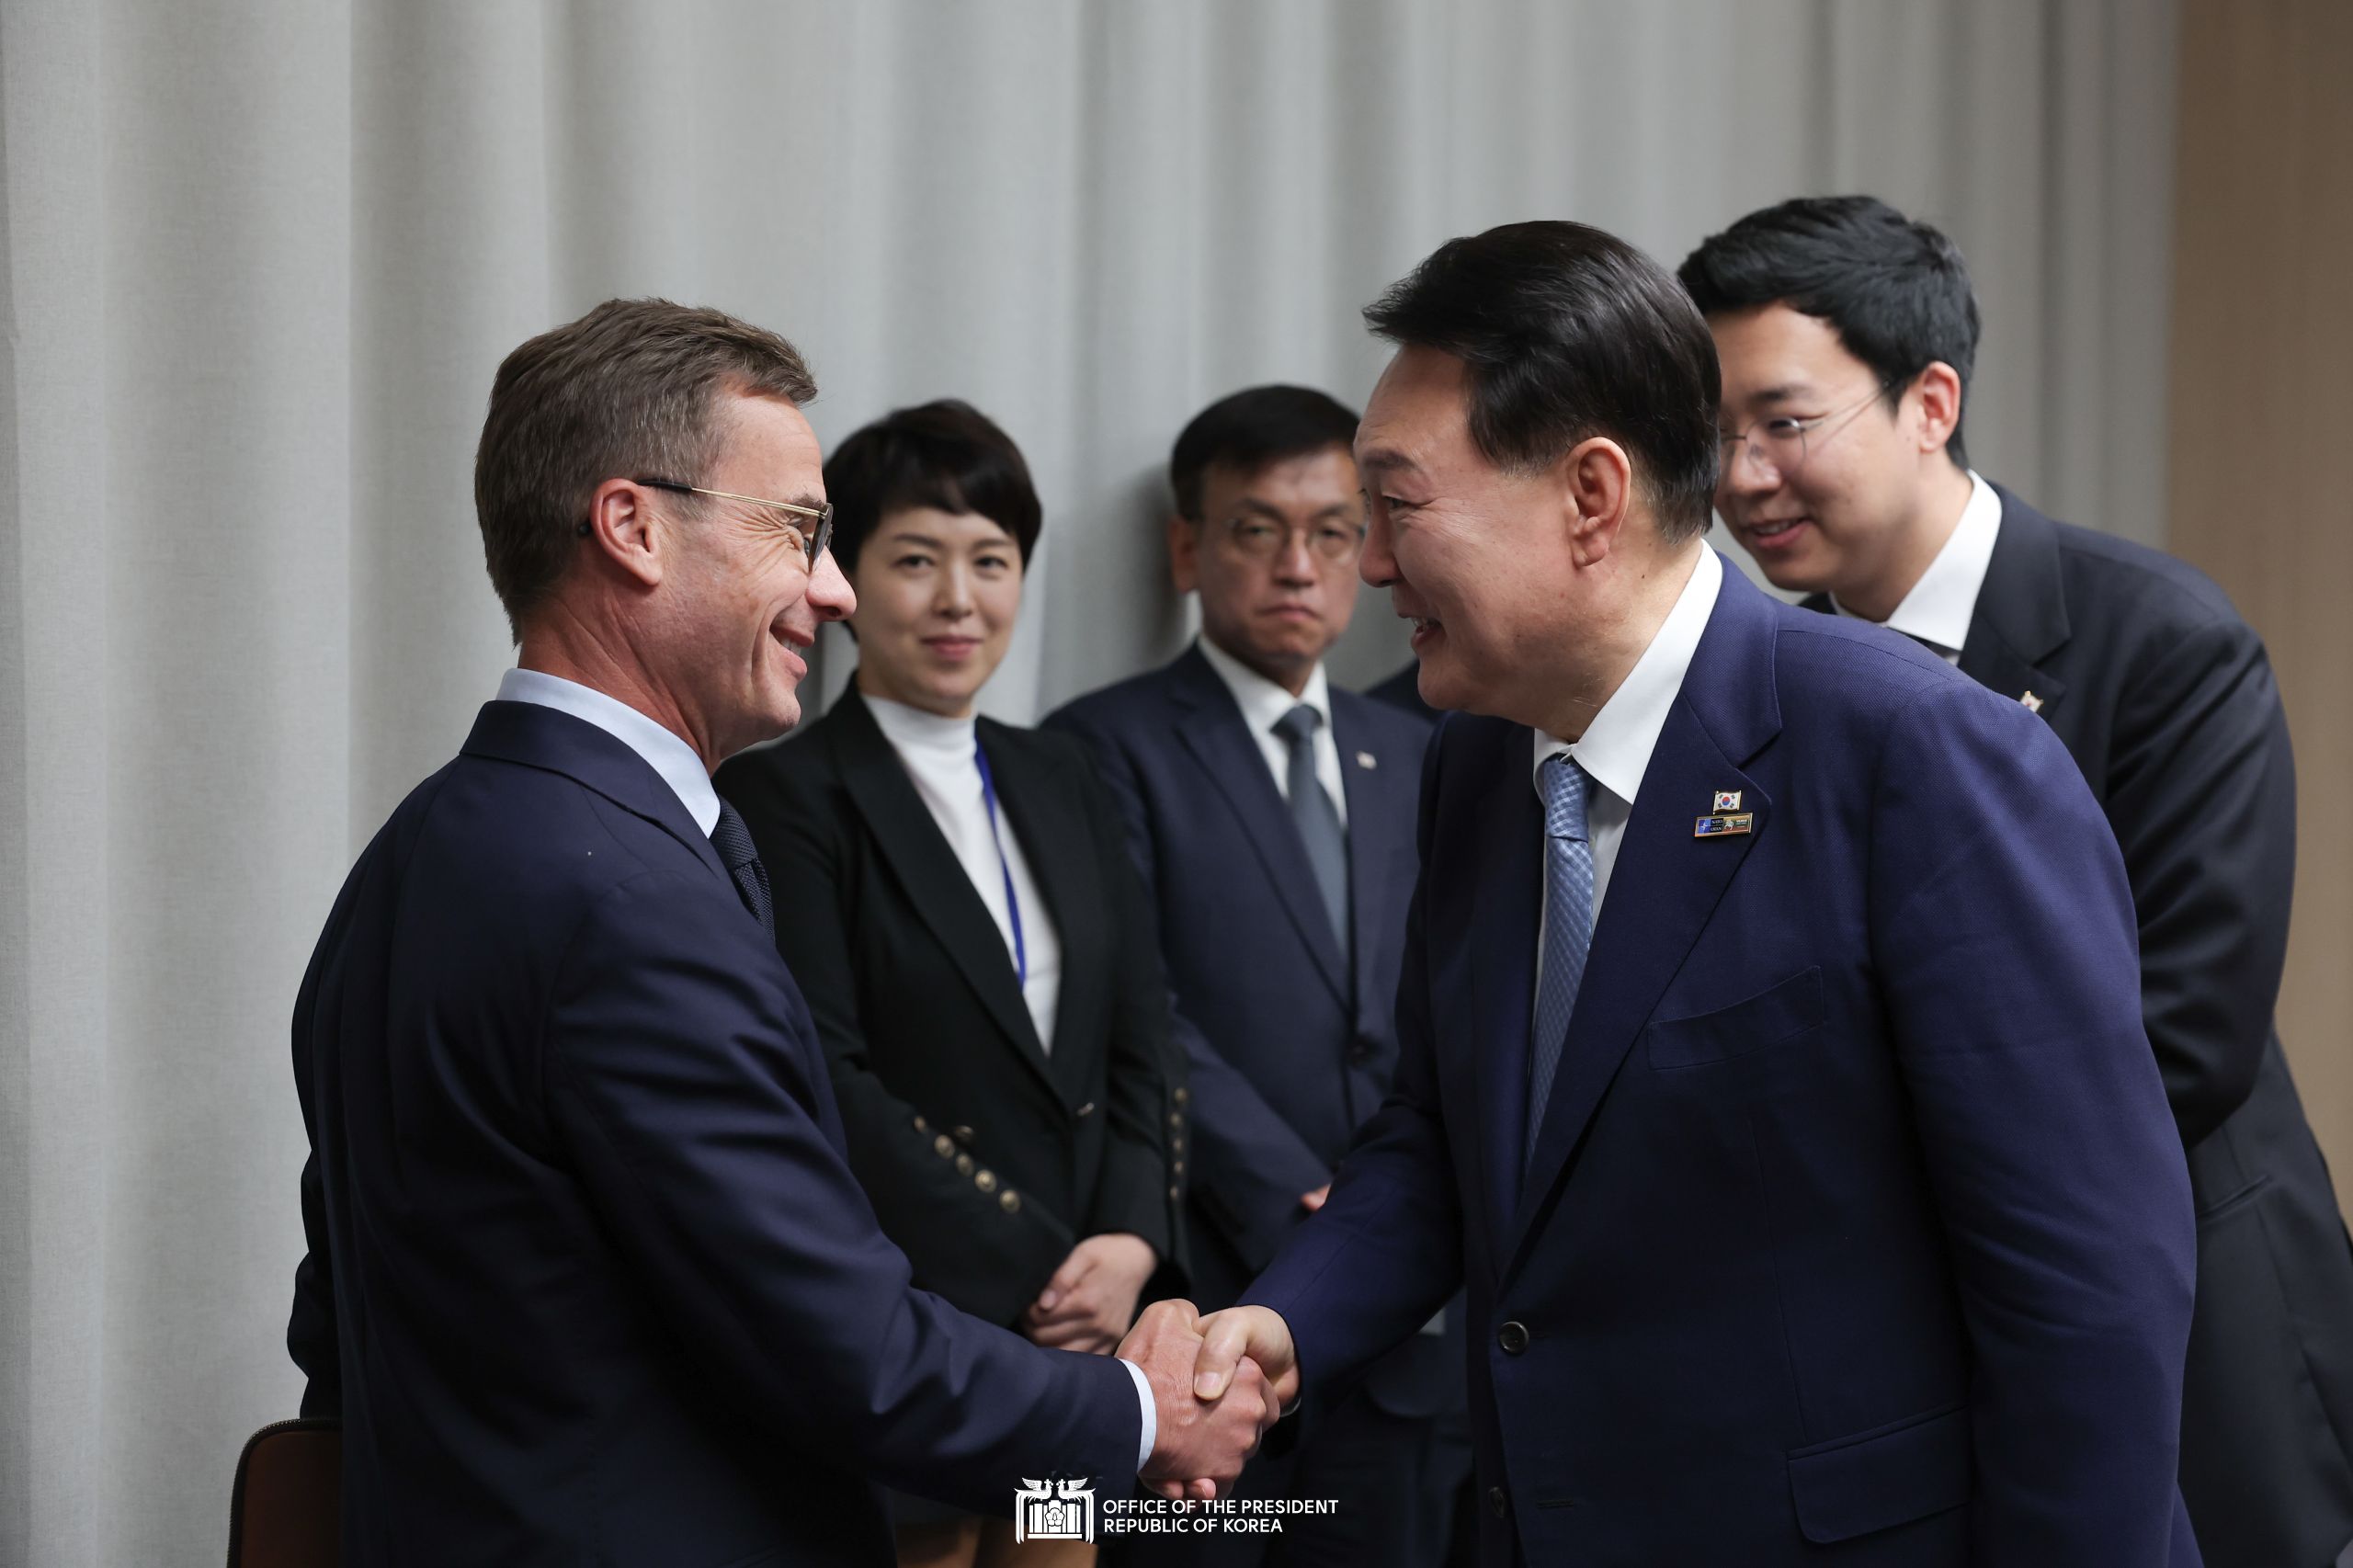 Korea-Sweden Summit in Vilnius, Lithuania slide 1